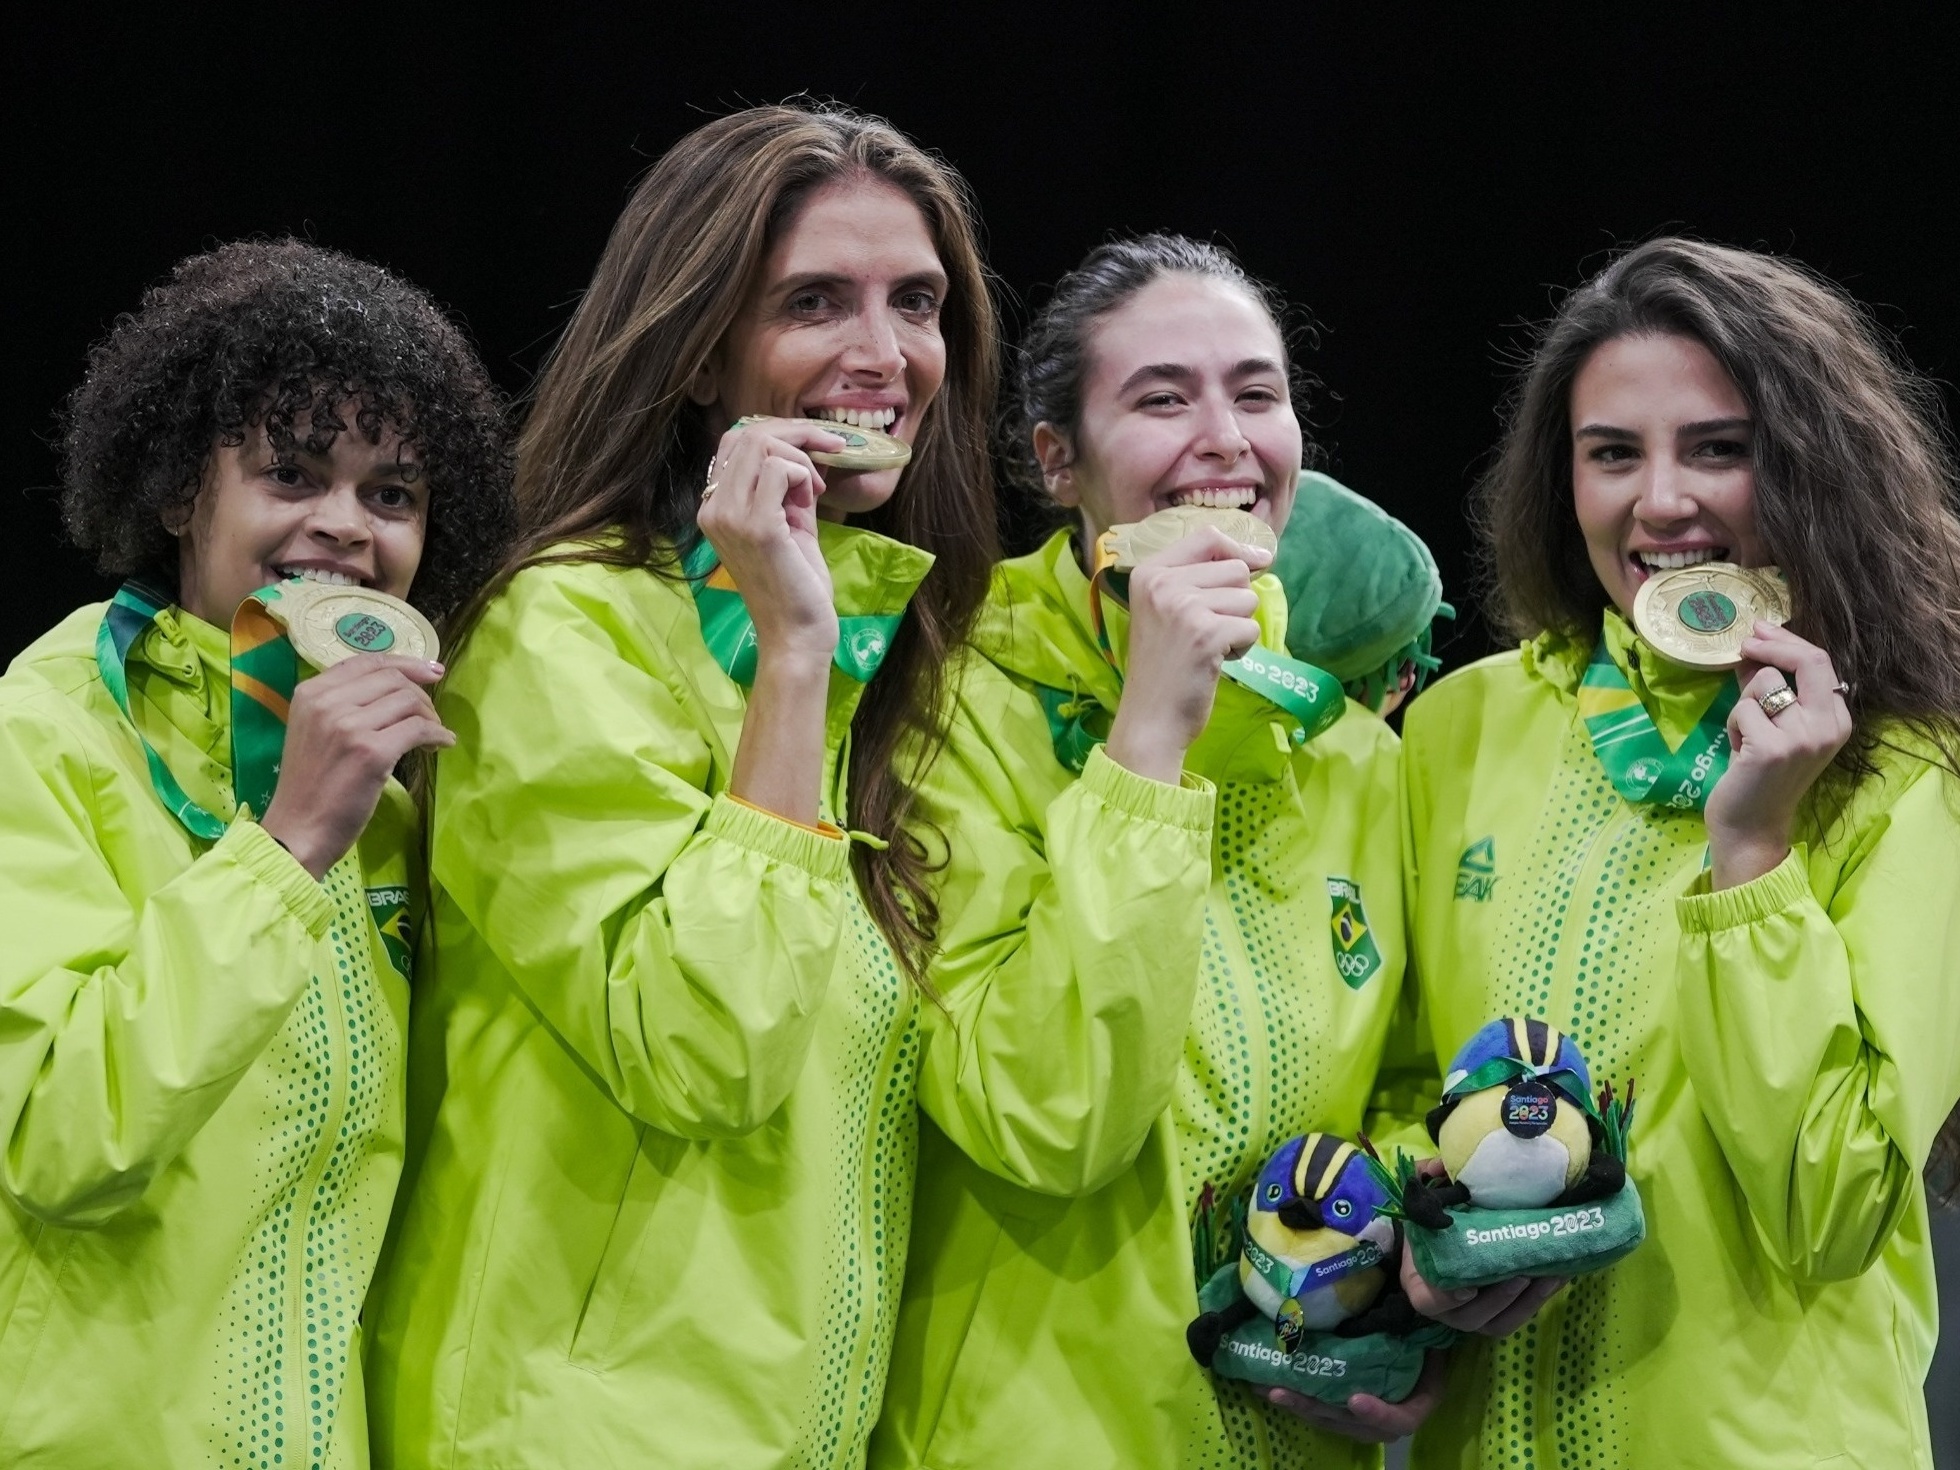 Brasil conquista mais vagas para as Olímpiadas de 2024 - O Hoje.com